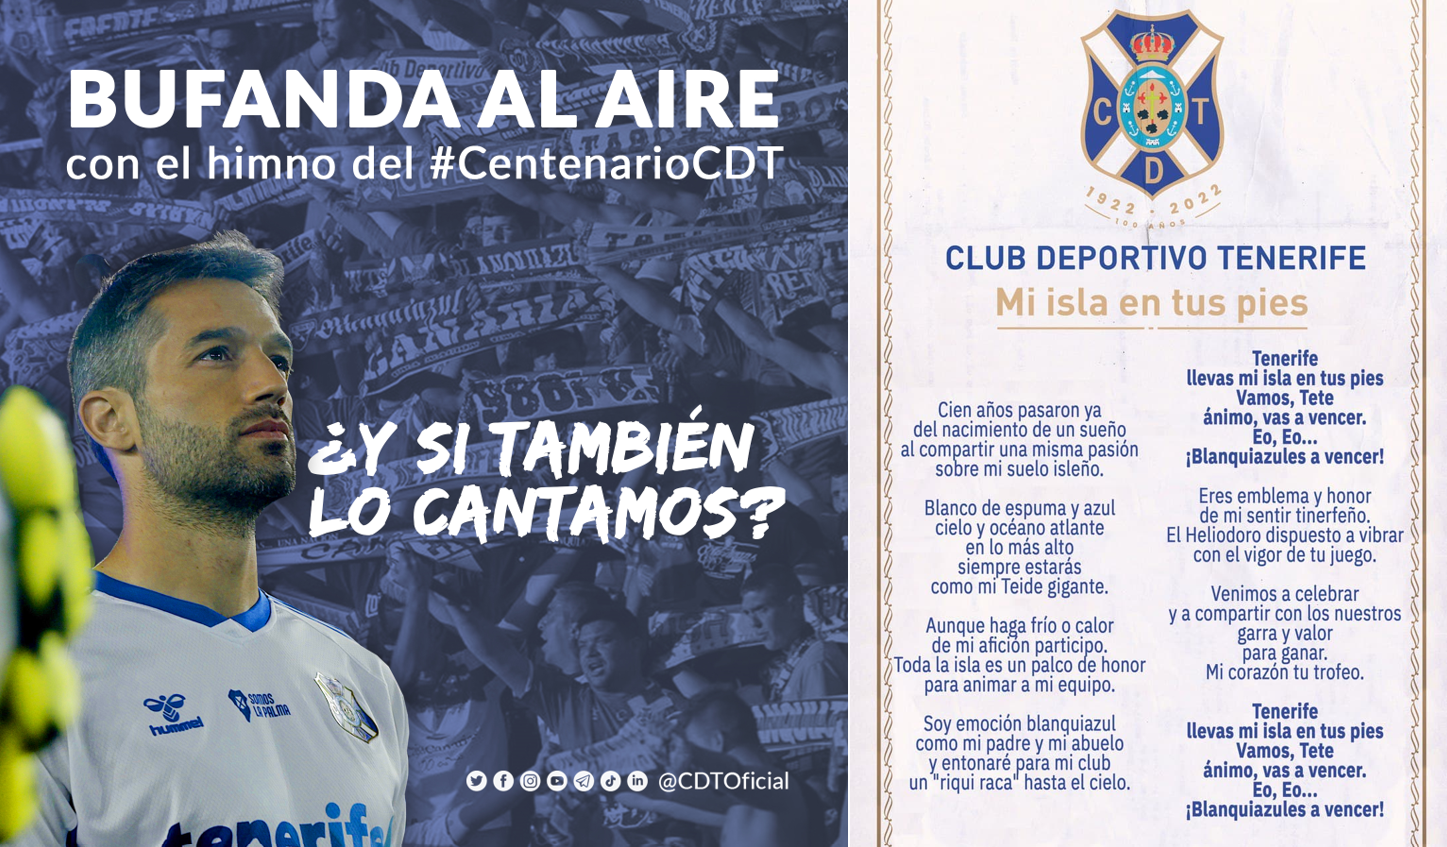 El CD Tenerife propone a la afición cantar el himno del Centenario antes del partido